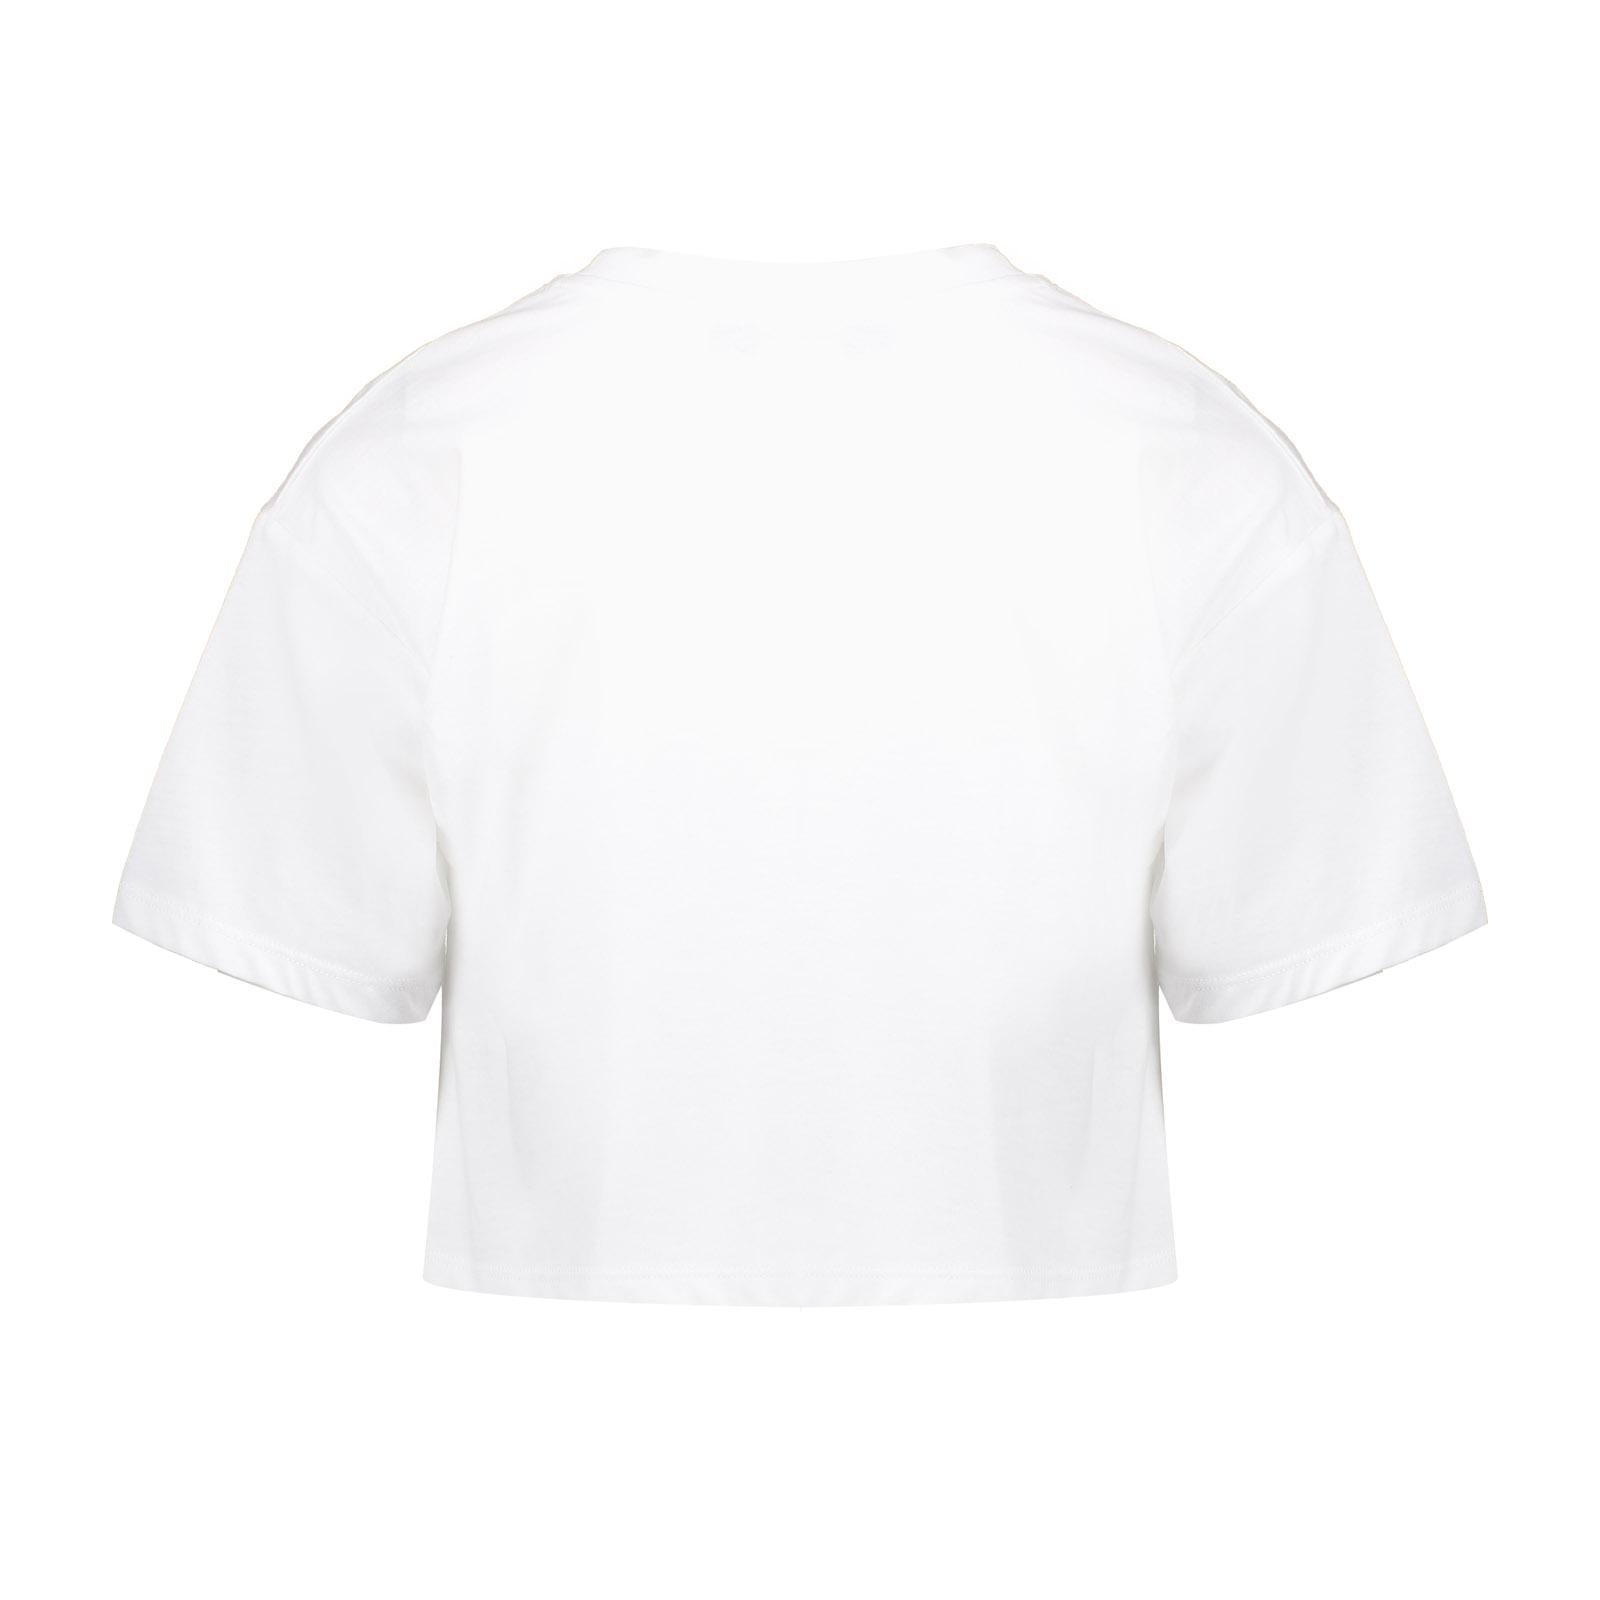 Meisjes T-shirt cropped "positive energy"  van Geisha in de kleur off-white/black in maat 176.